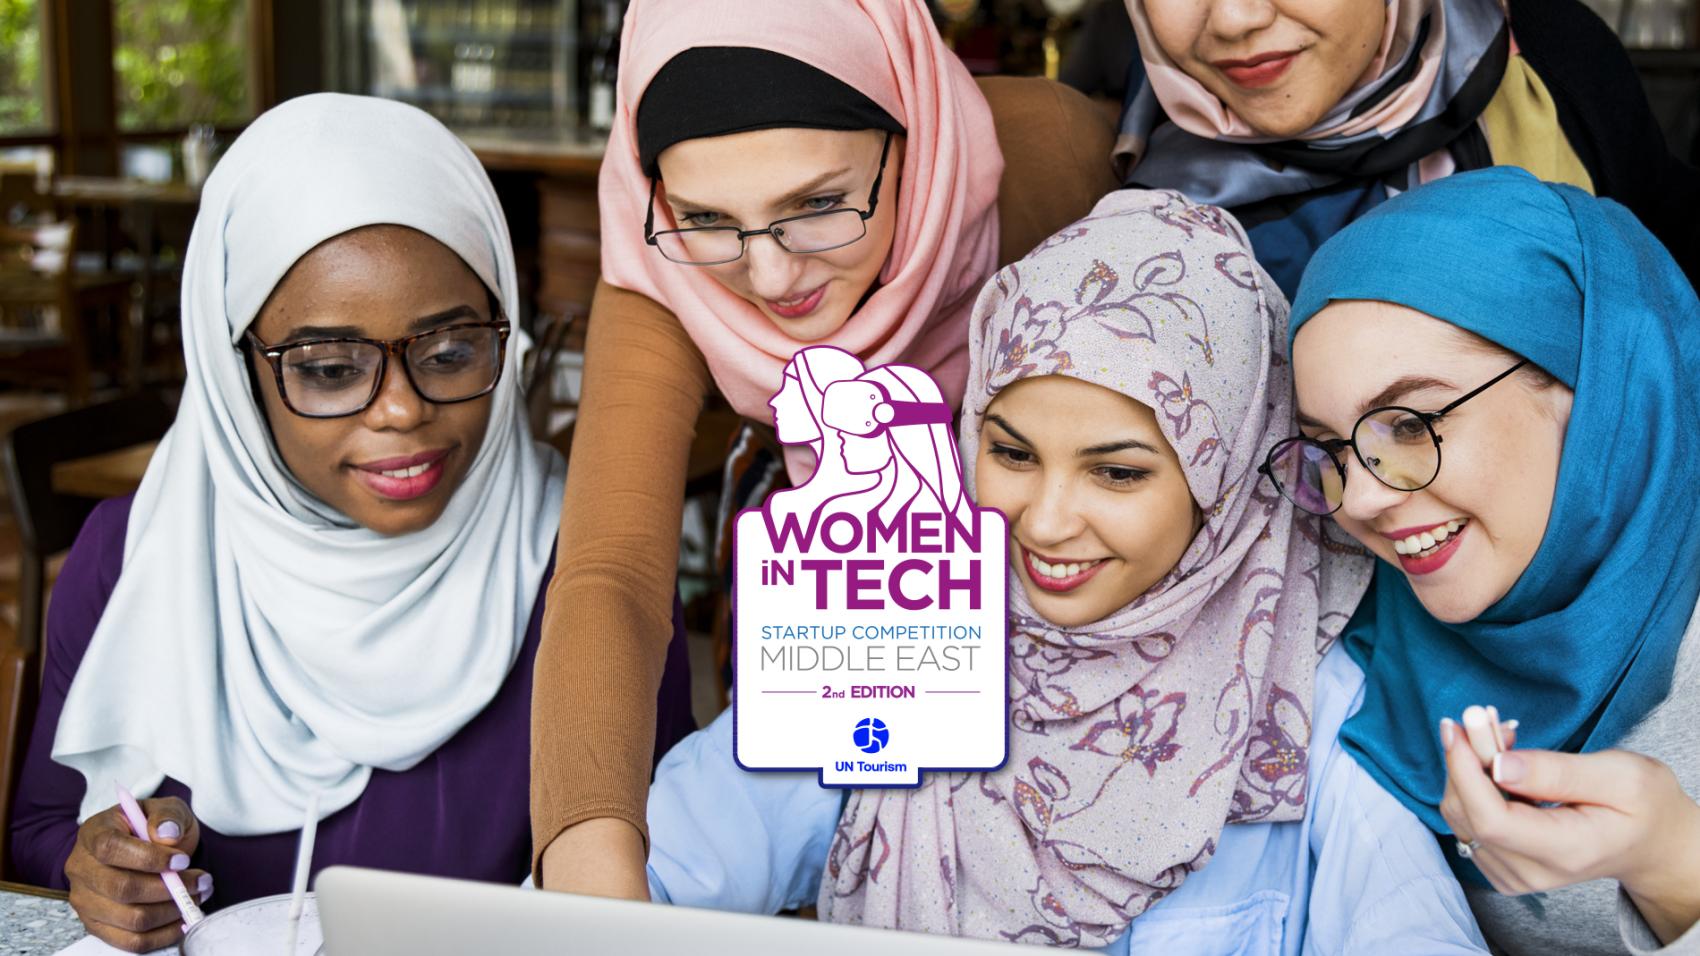 Lancement du concours d’ONU Tourisme visant les femmes des start-up technologiques au Moyen-Orient